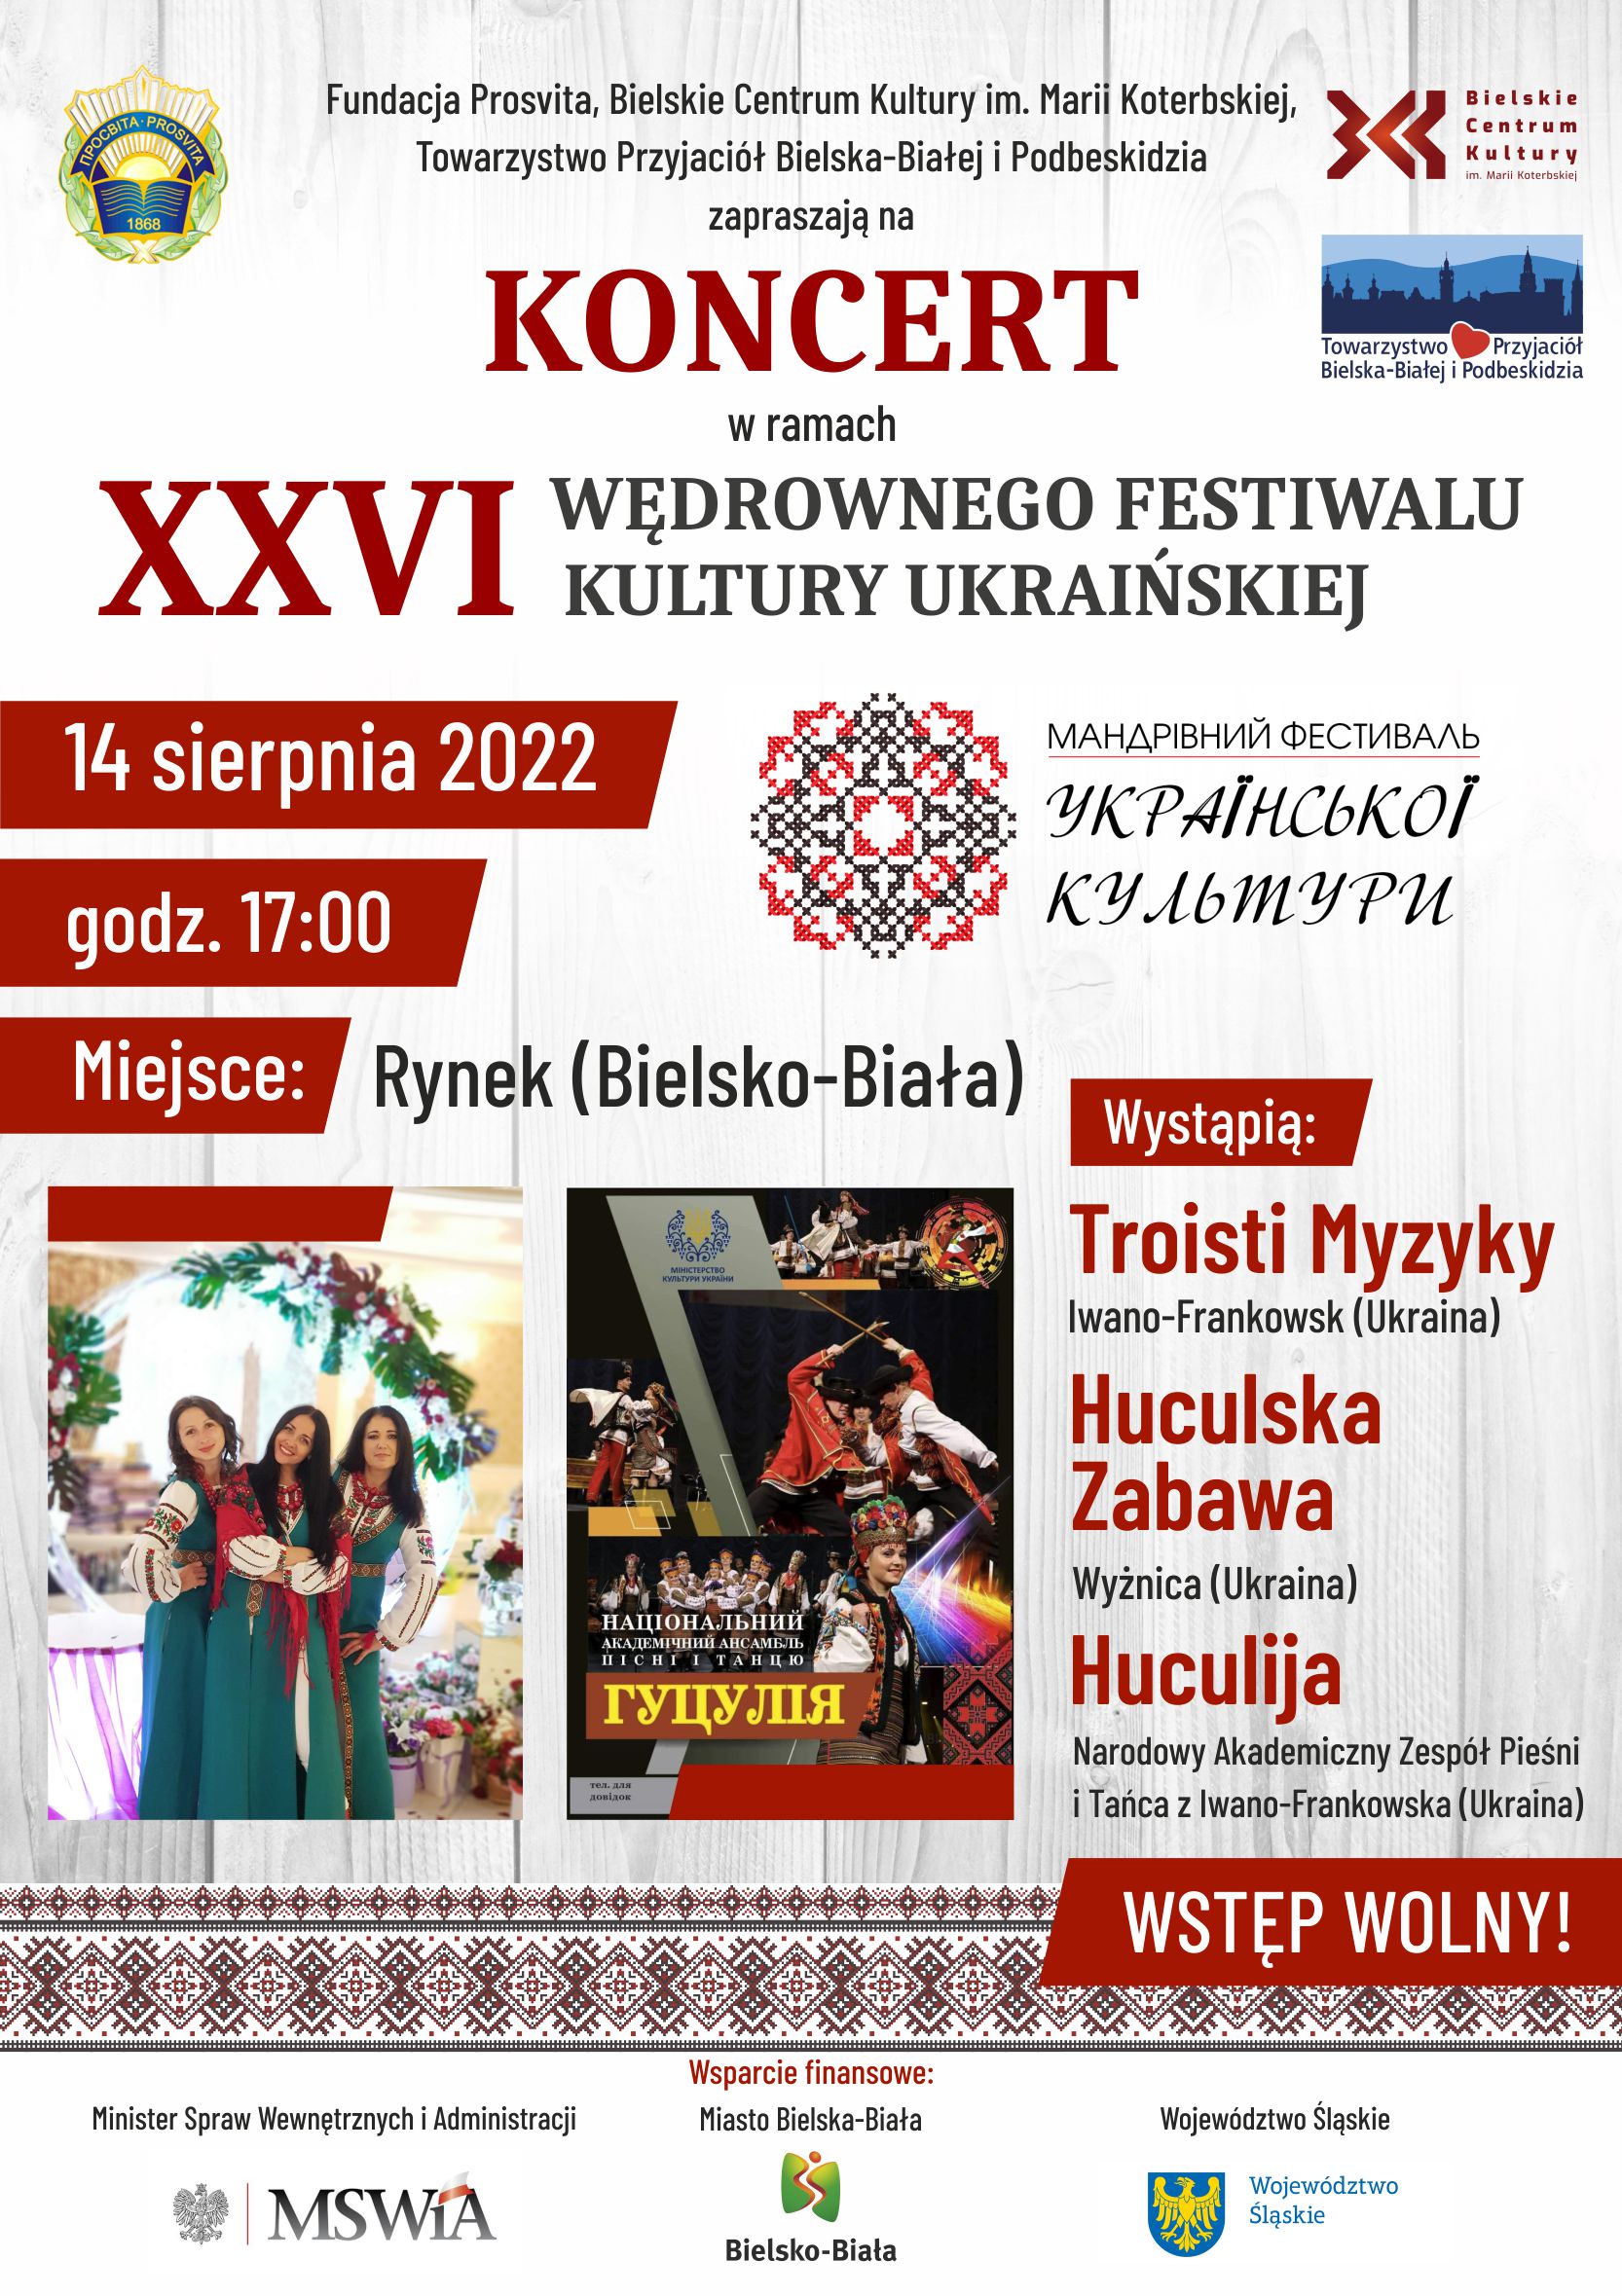  Koncert 26. Wędrownego Festiwalu Kultury Ukraińskiej Na zdjęciu plakat imprezy